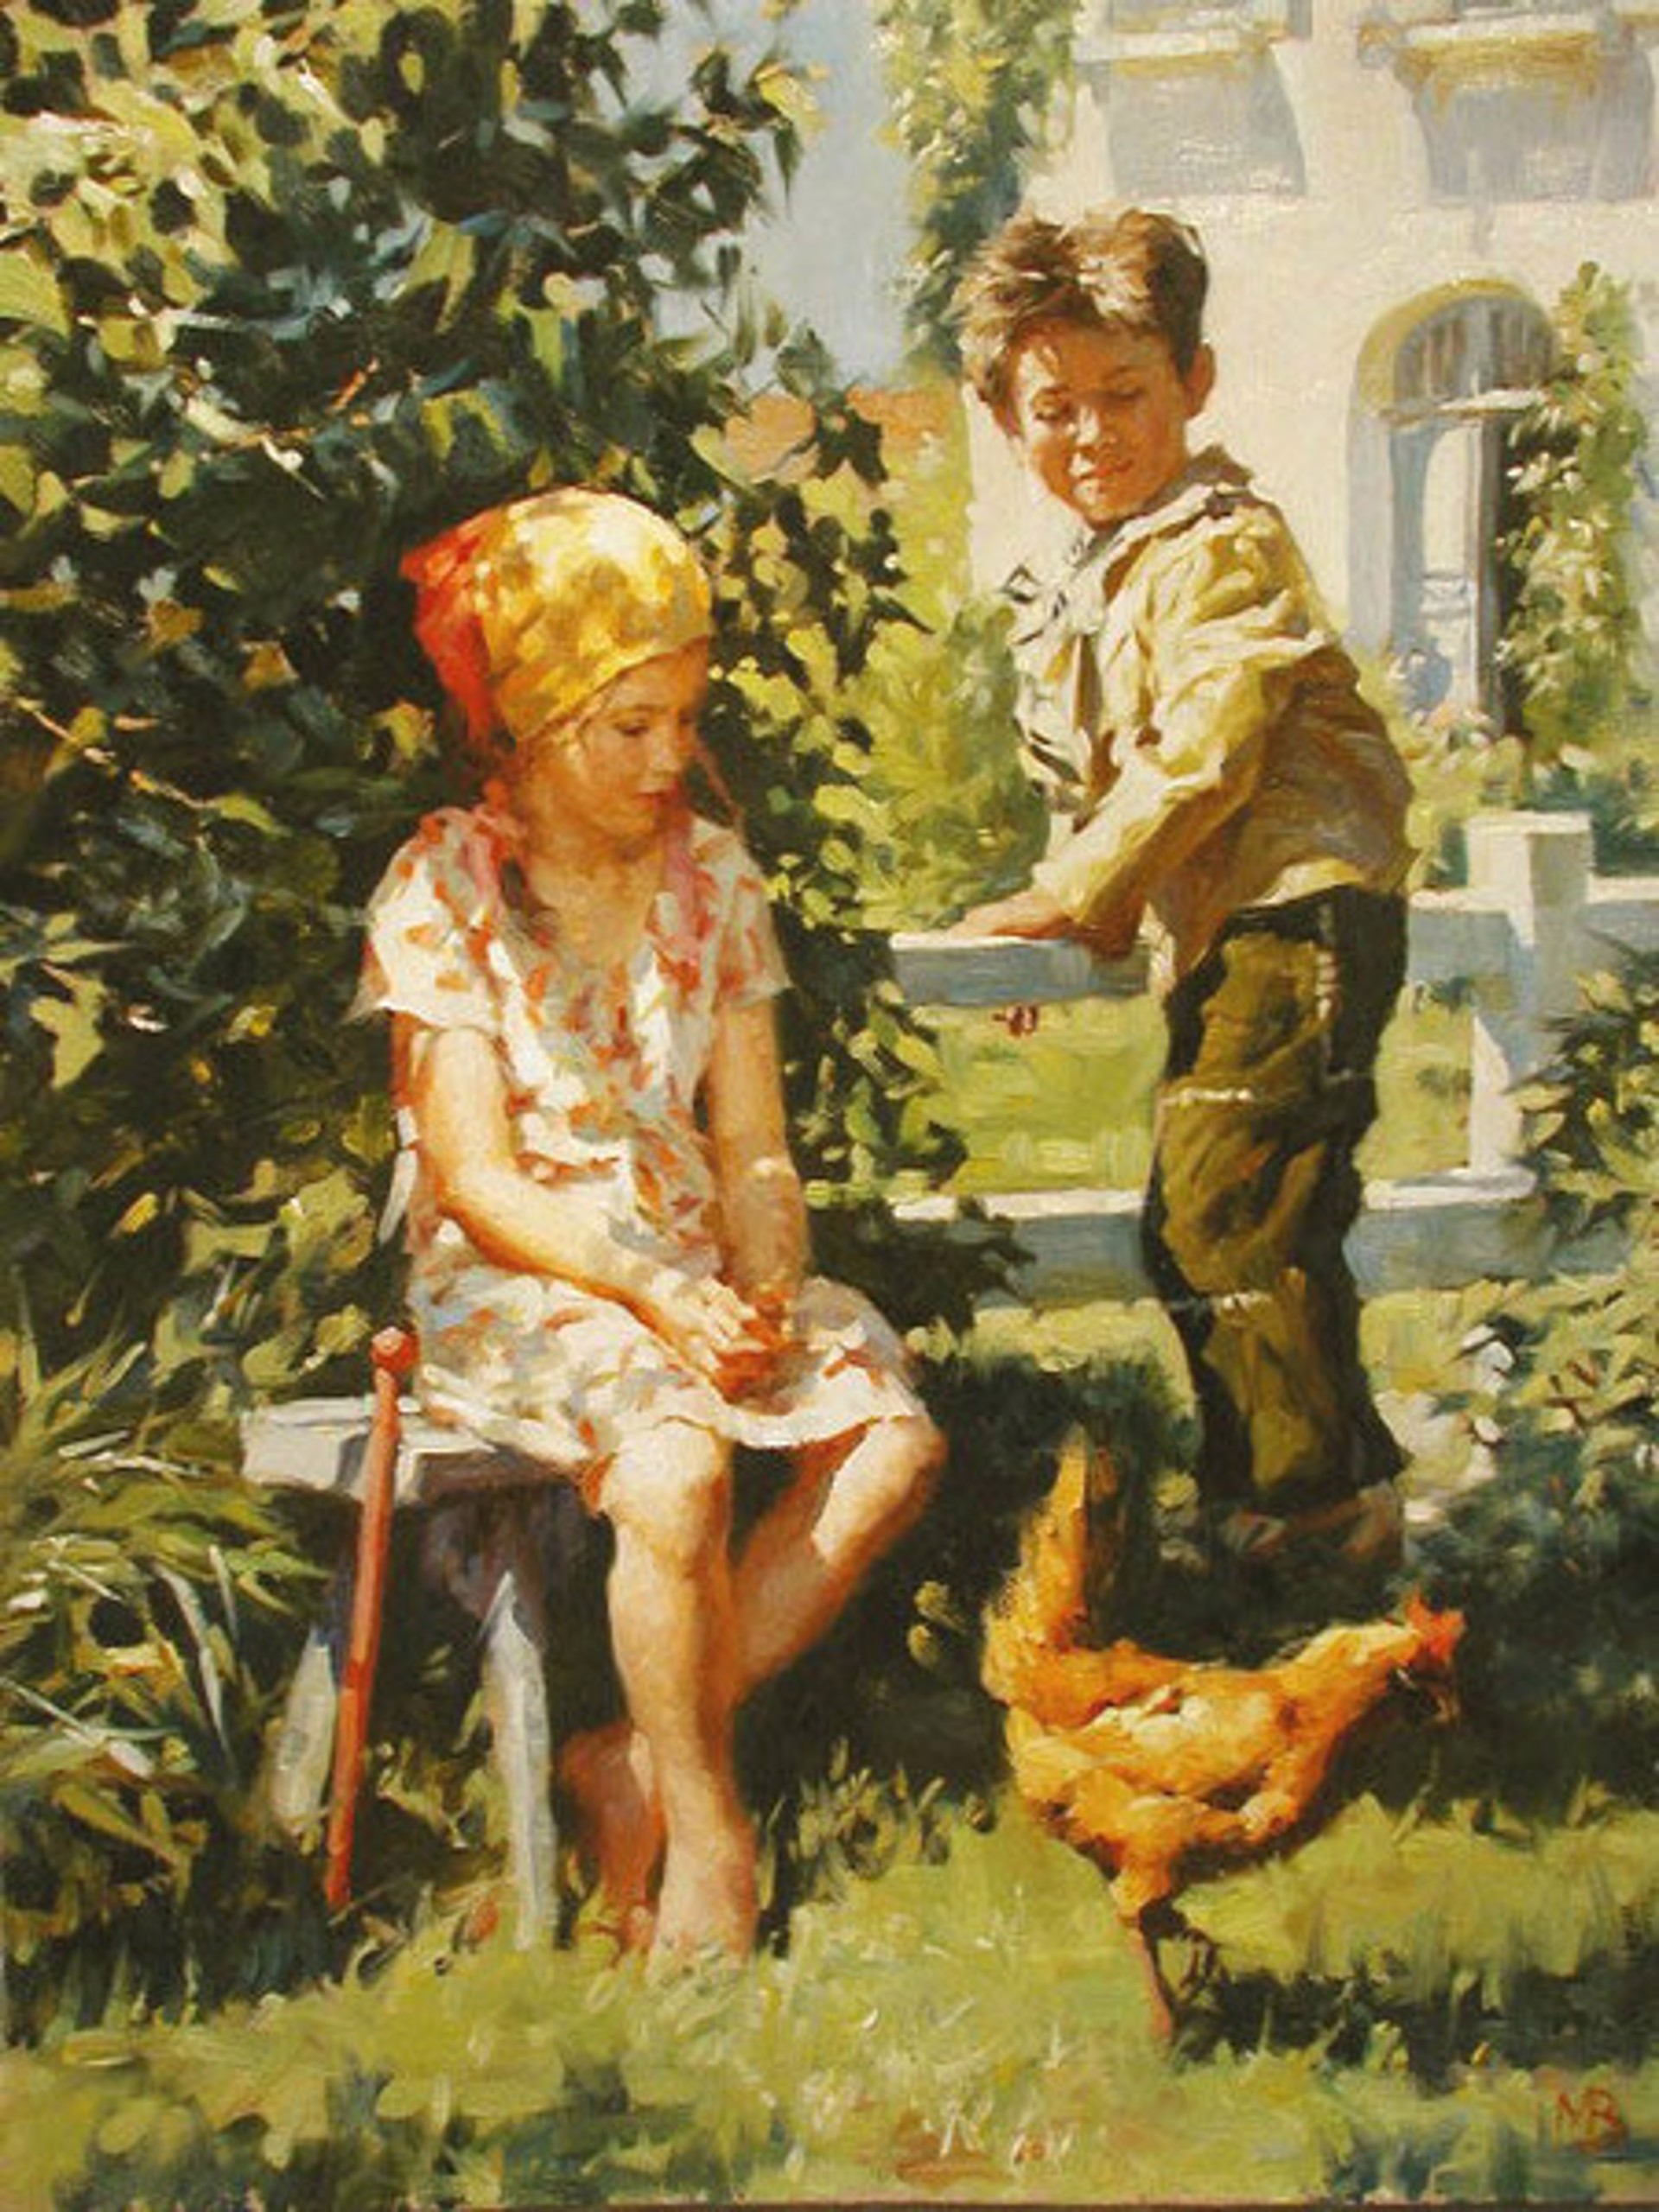 The Chicken by Vyacheslav Morgun